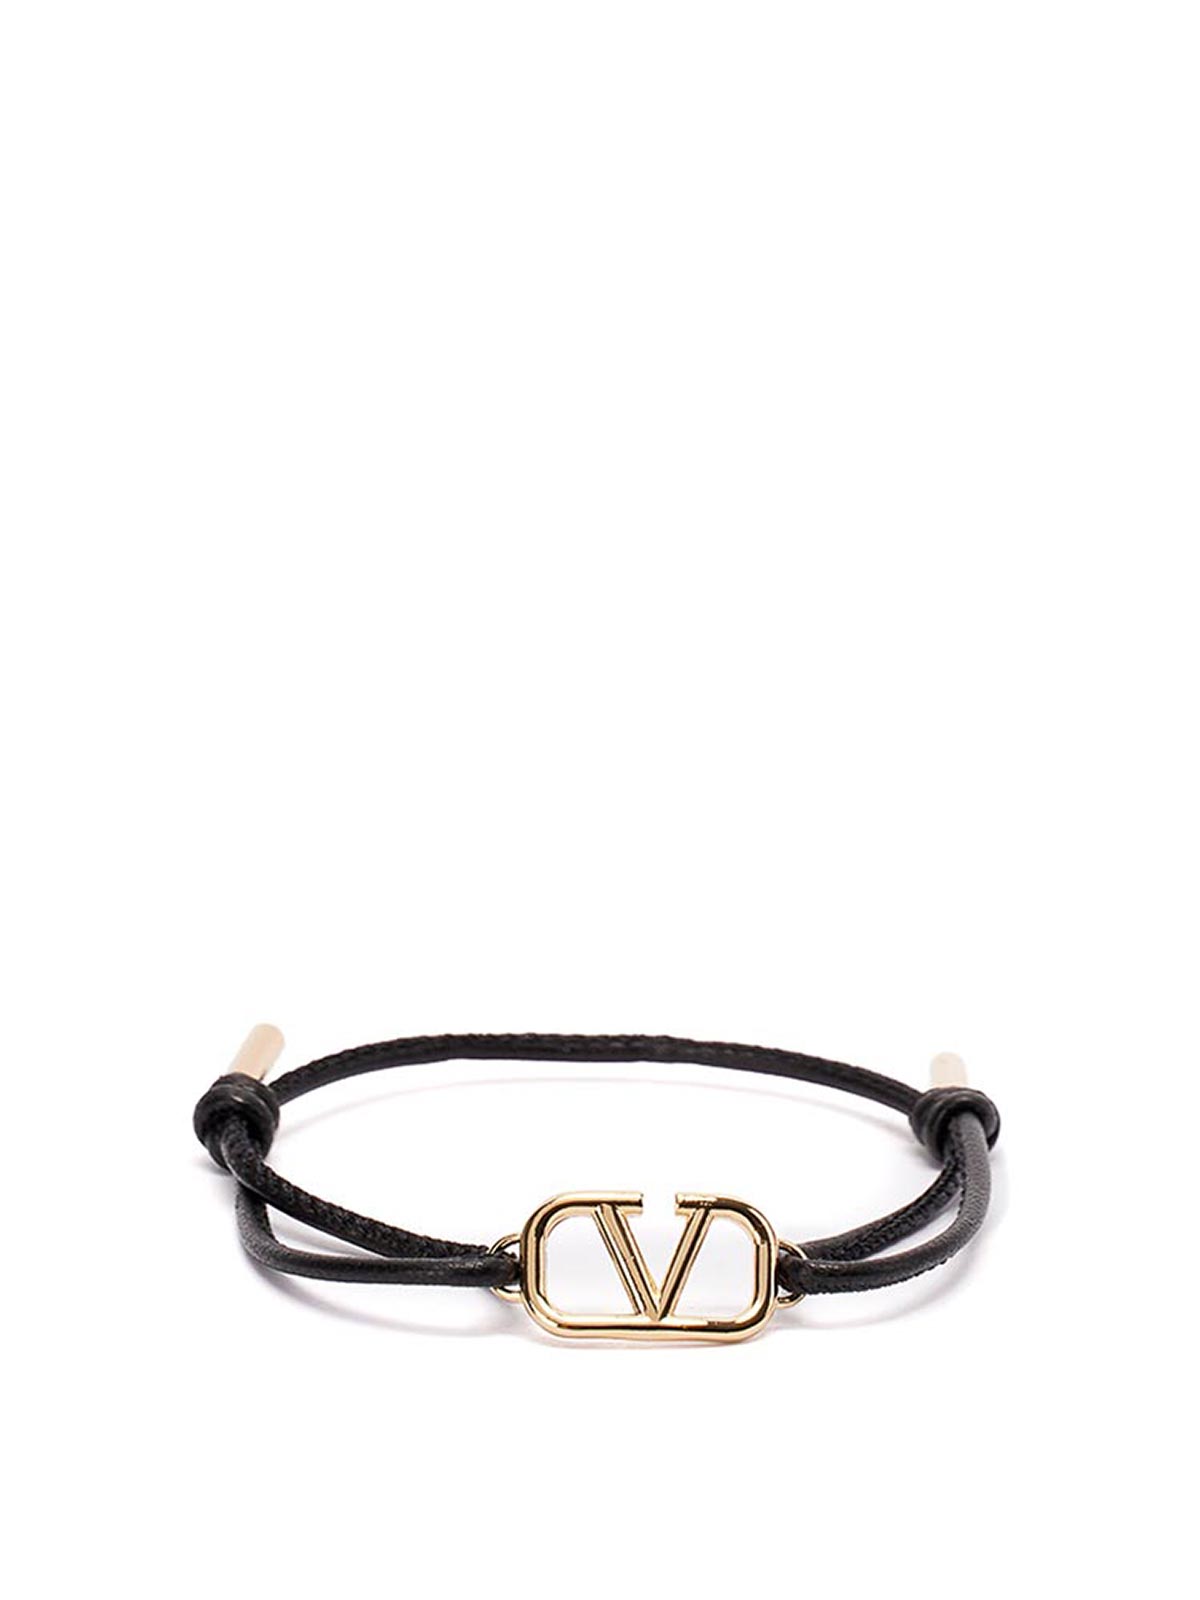 V Logo Signature Chain Choker in Black - Valentino Garavani